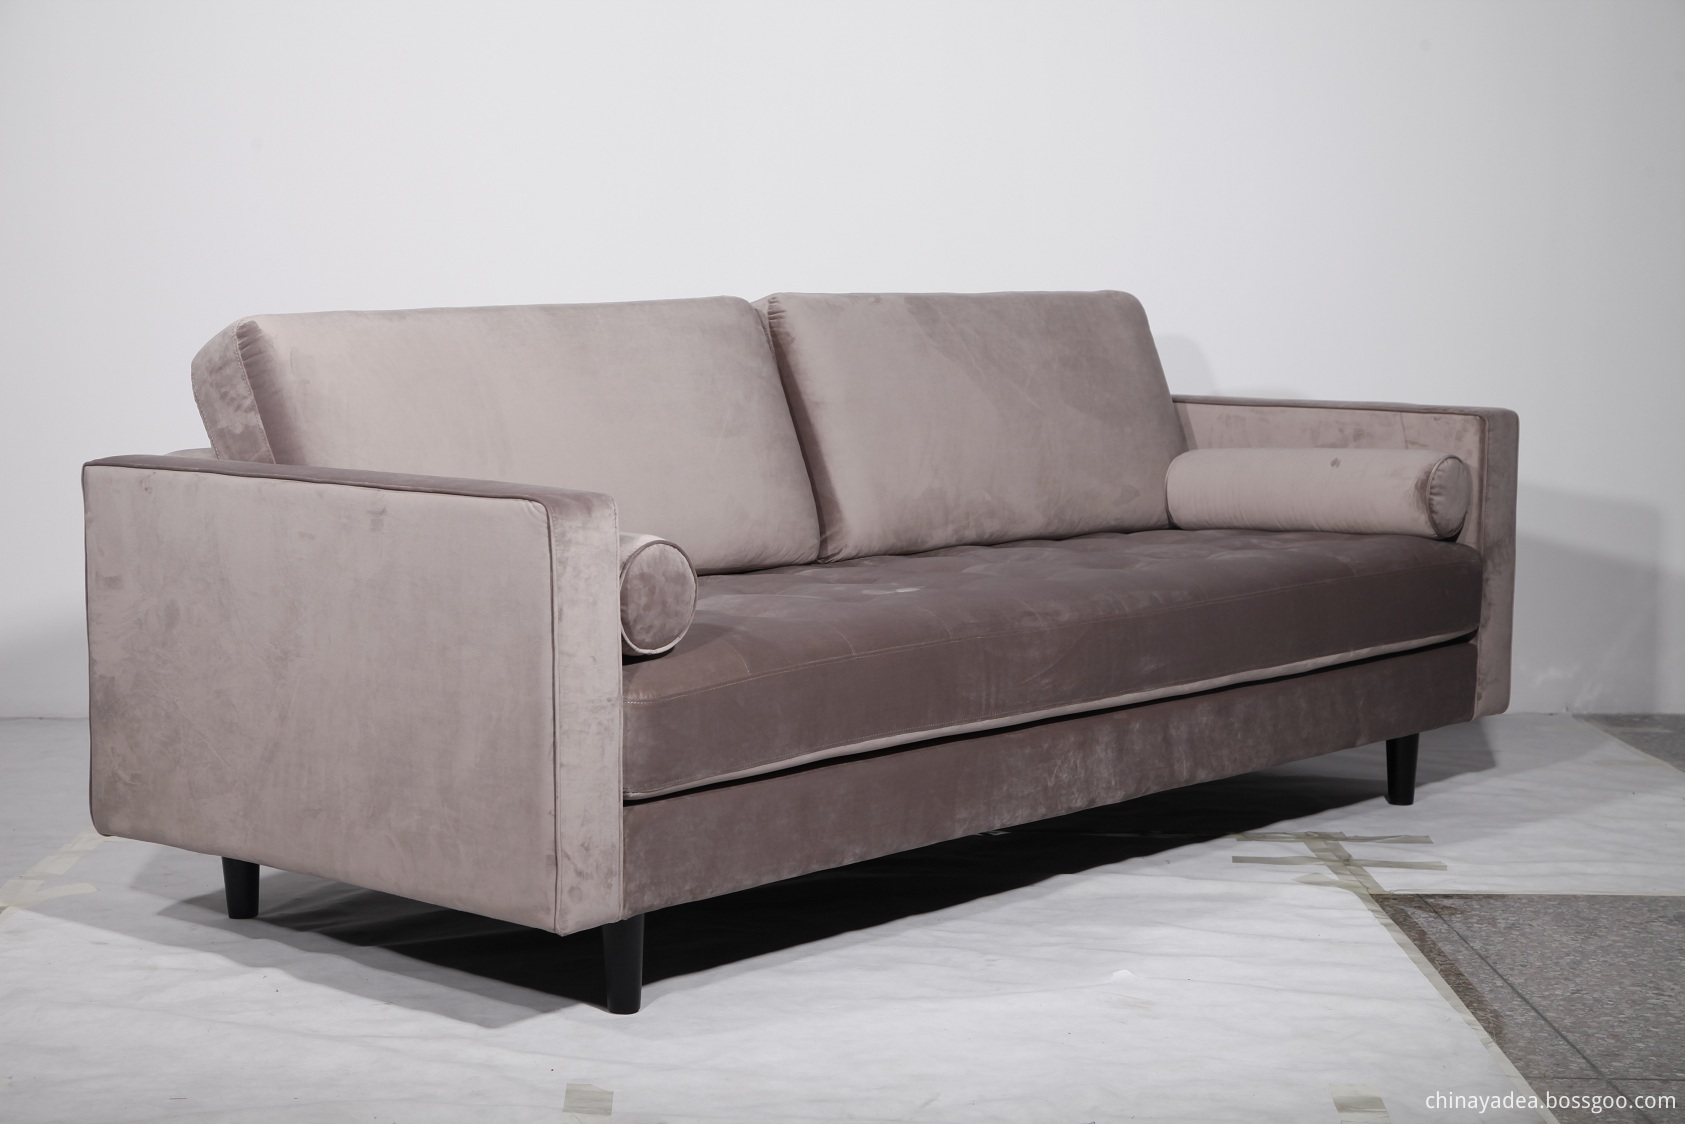 Comfortable Wood Sofa for Home